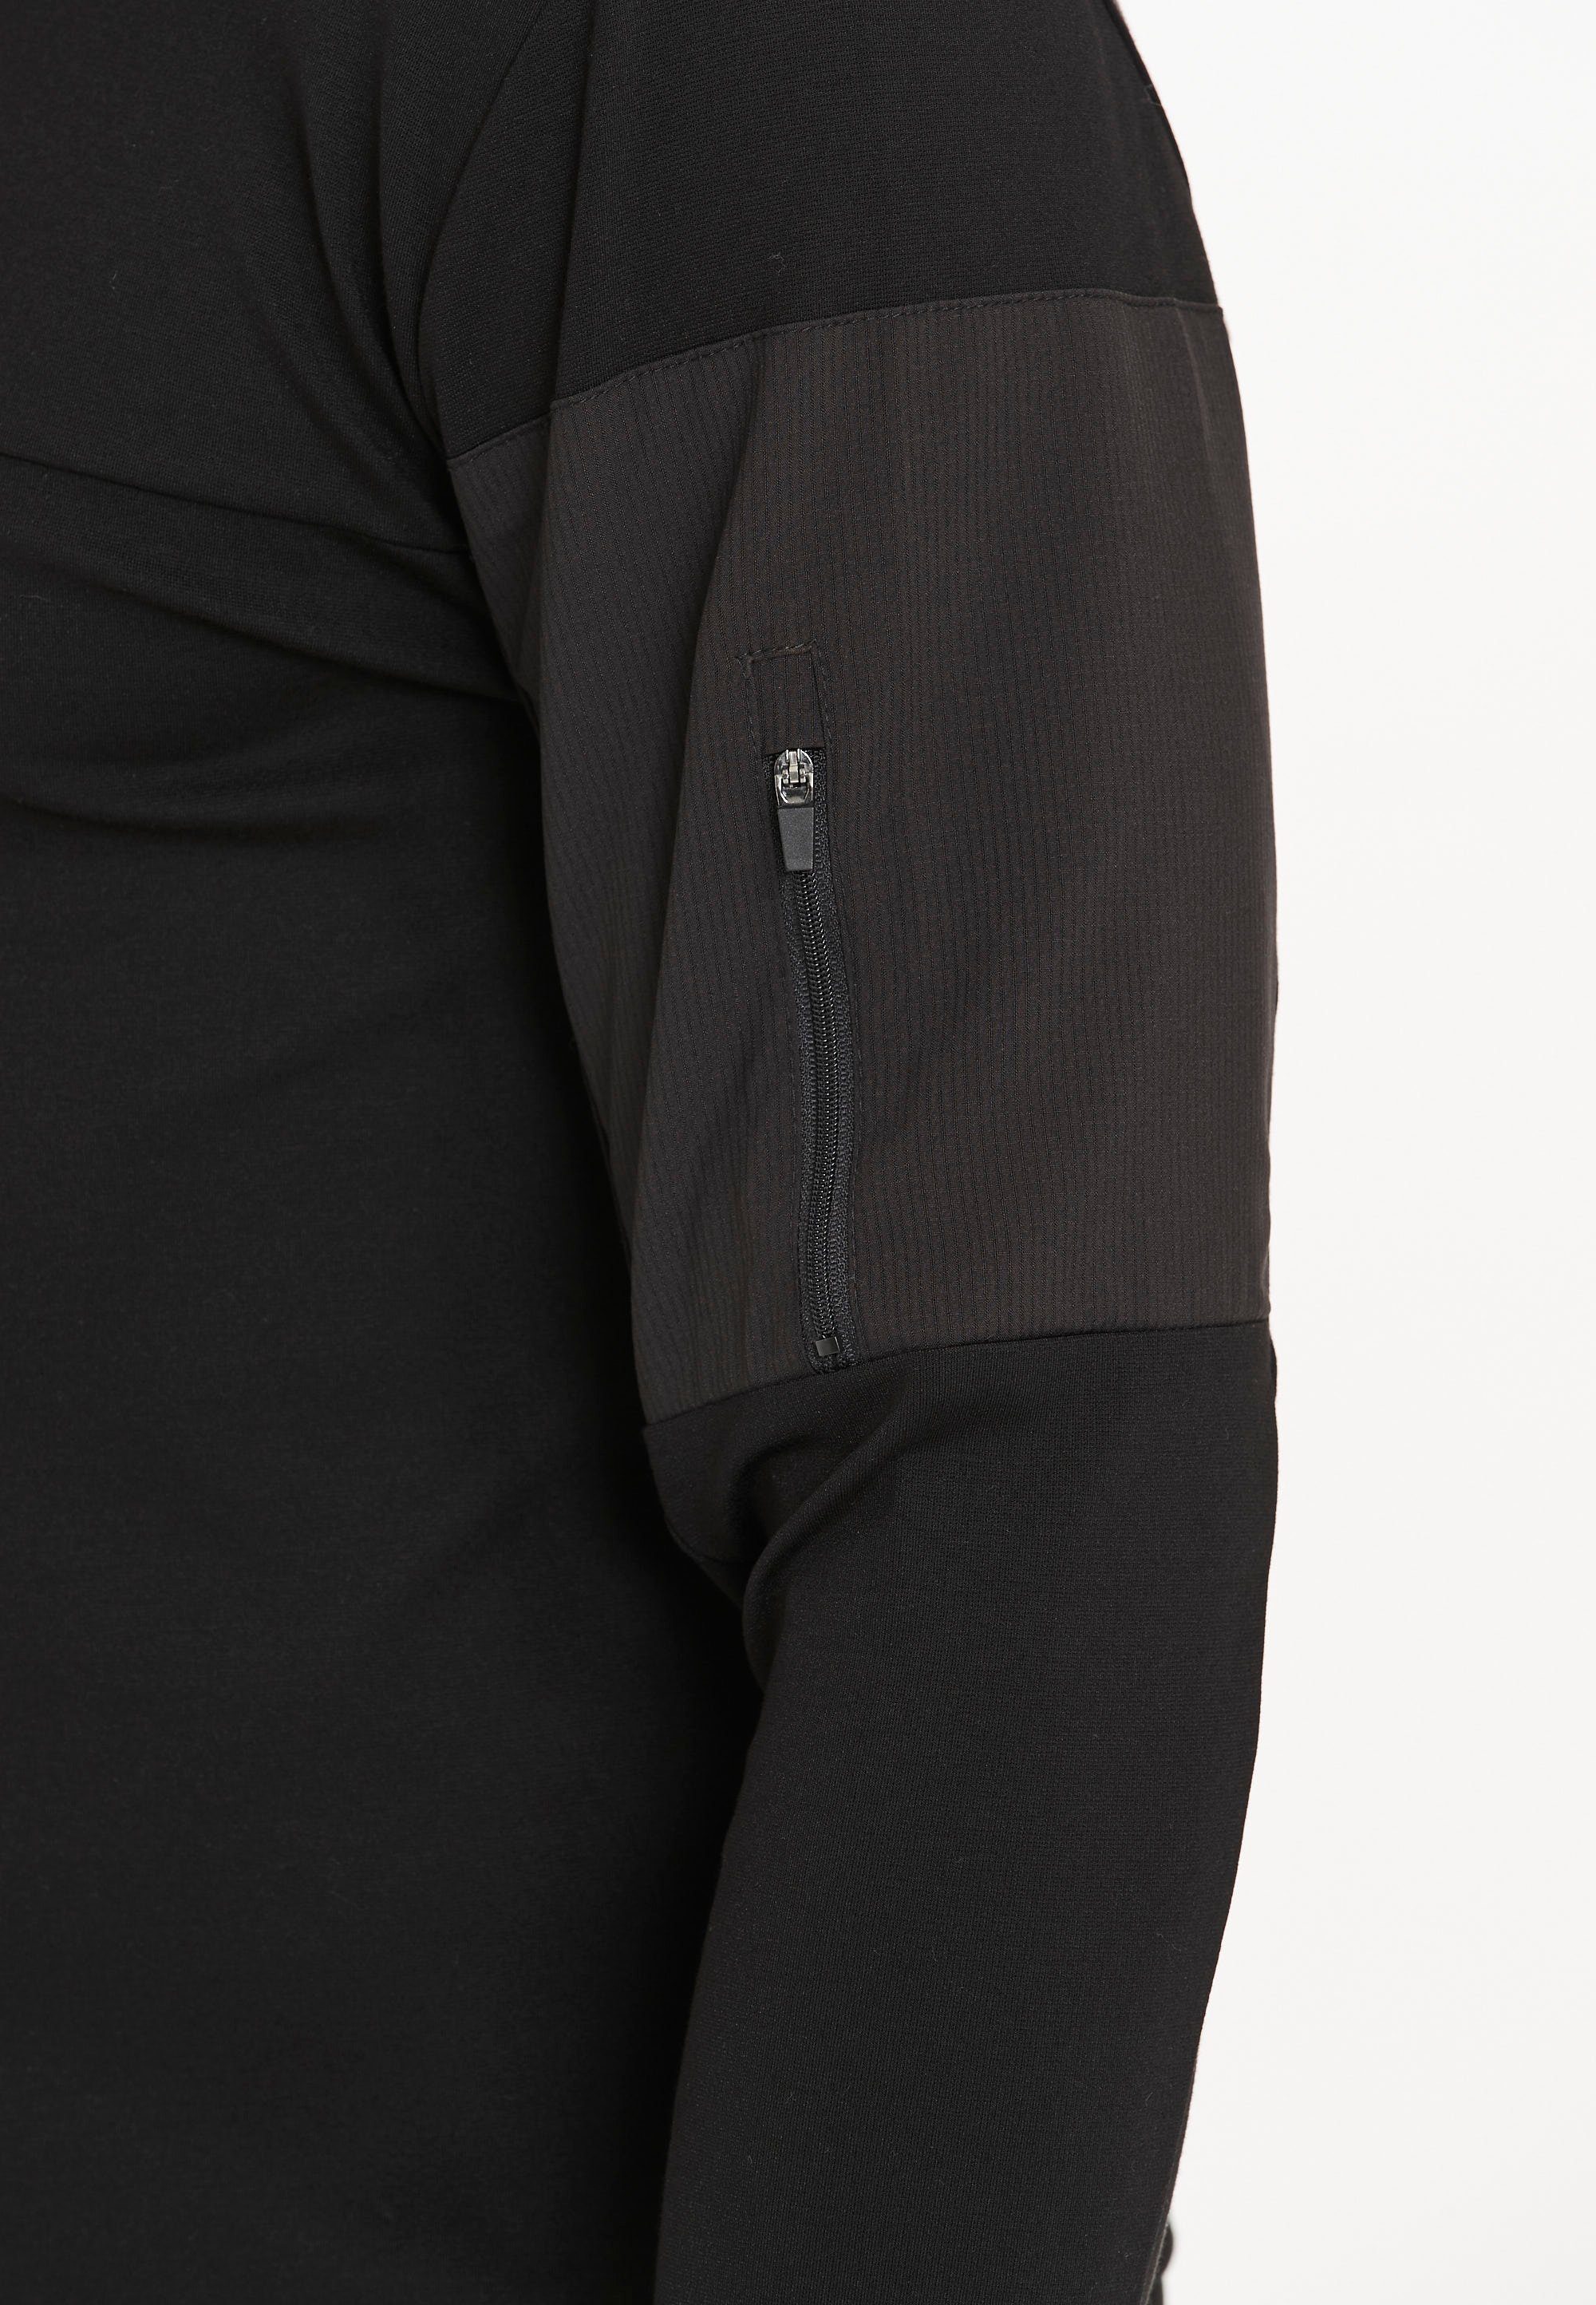 Bisosco Virtus Sweatshirt praktischer Reißverschlusstasche schwarz mit